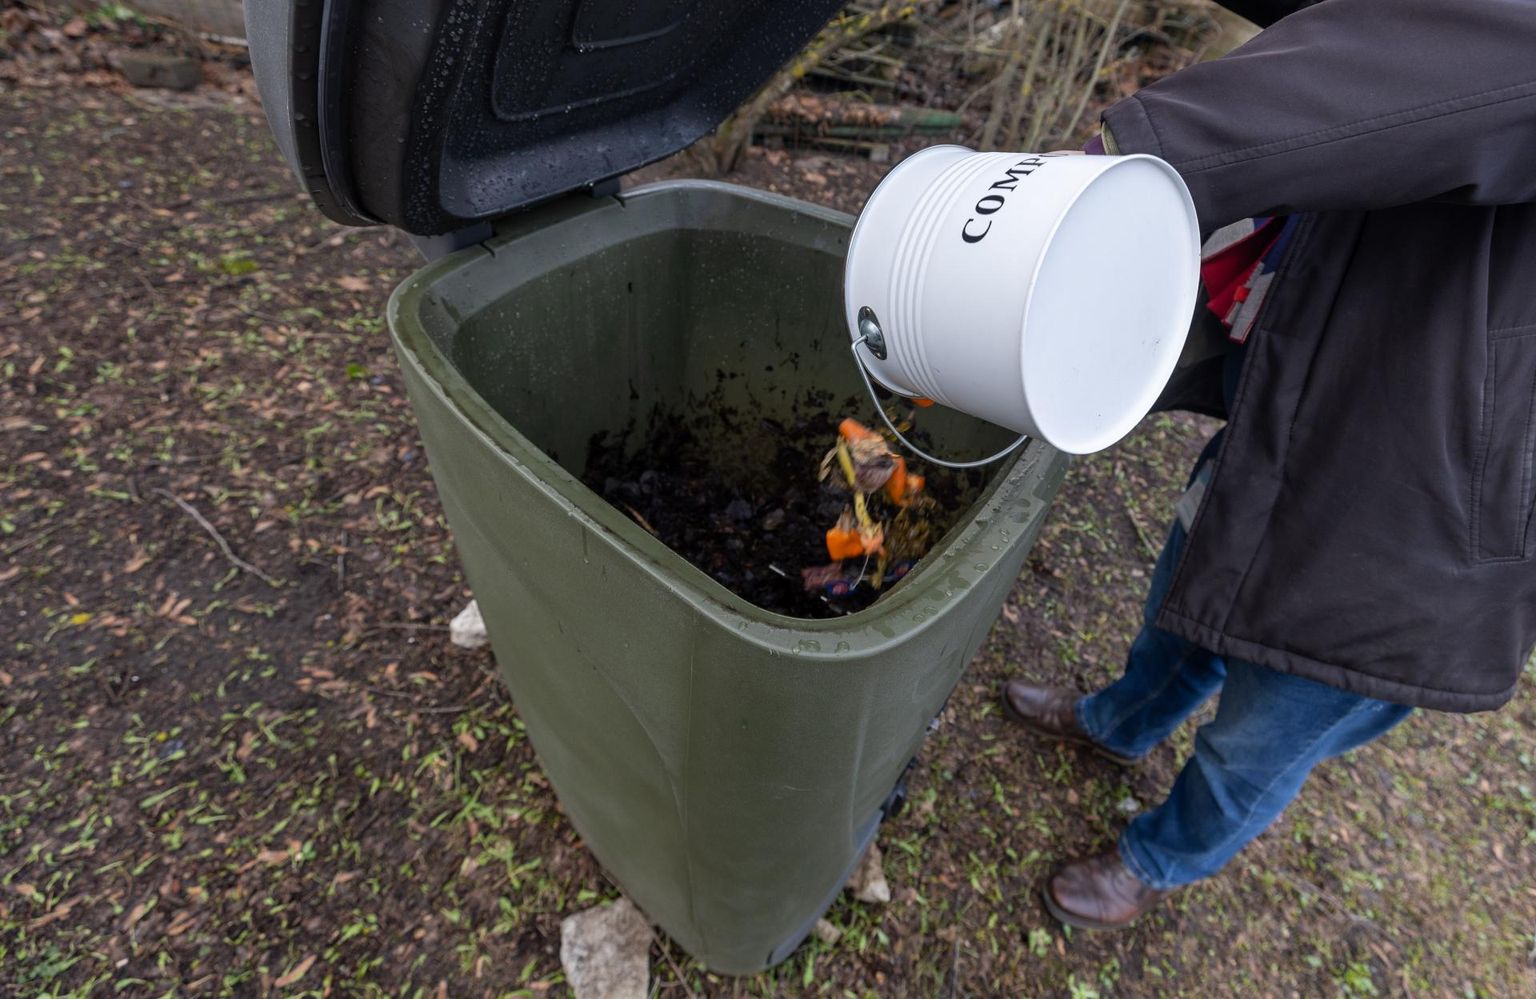 Linnades peavad olema kasutusel kinnised kompostrid, hajaasustuspiirkonnas võib komposti ladustada ka lahtiselt juhul, kui see ei häiri naabreid.